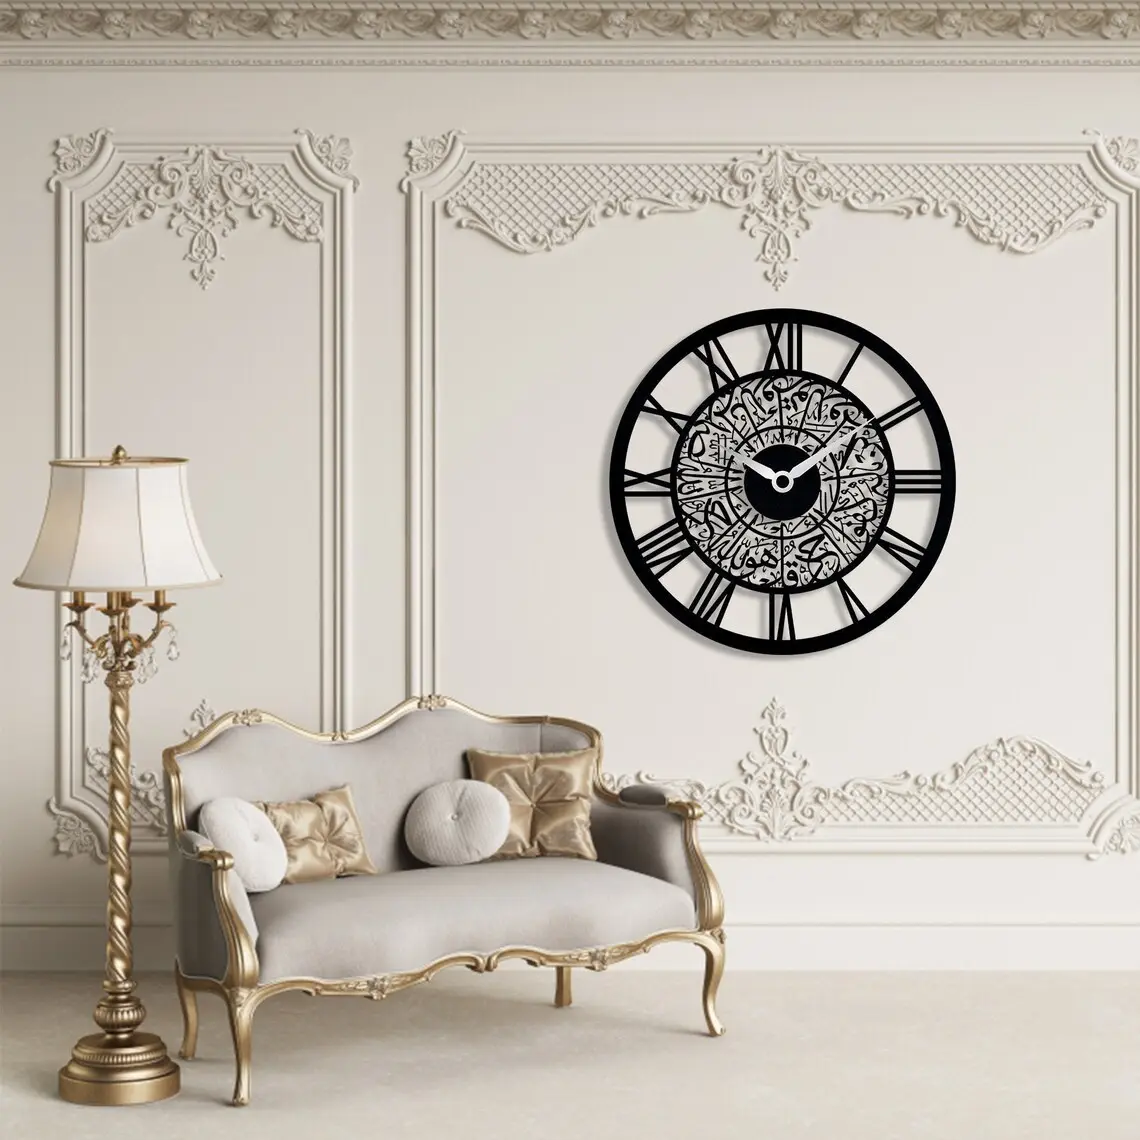 Modèle chaud en usine personnalisé rond créatif moderne acrylique Art islamique horloge murale